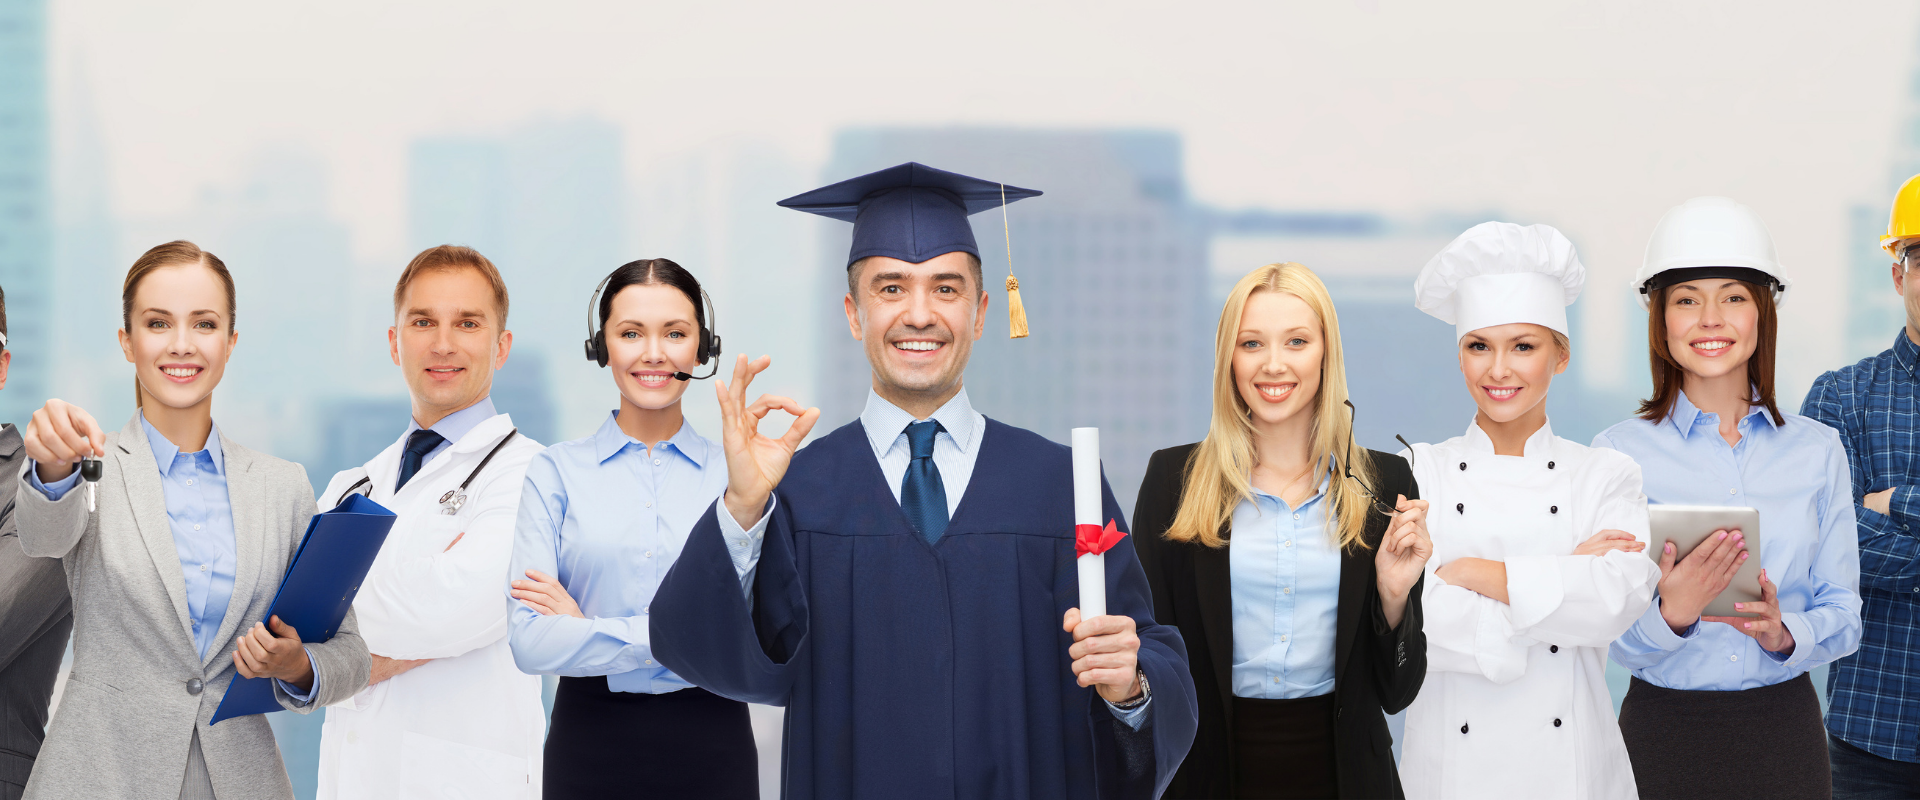 Mit der neuen Berufsbezeichnung soll die Gleichwertigkeit von beruflicher und akademischer Bildung betont werden.